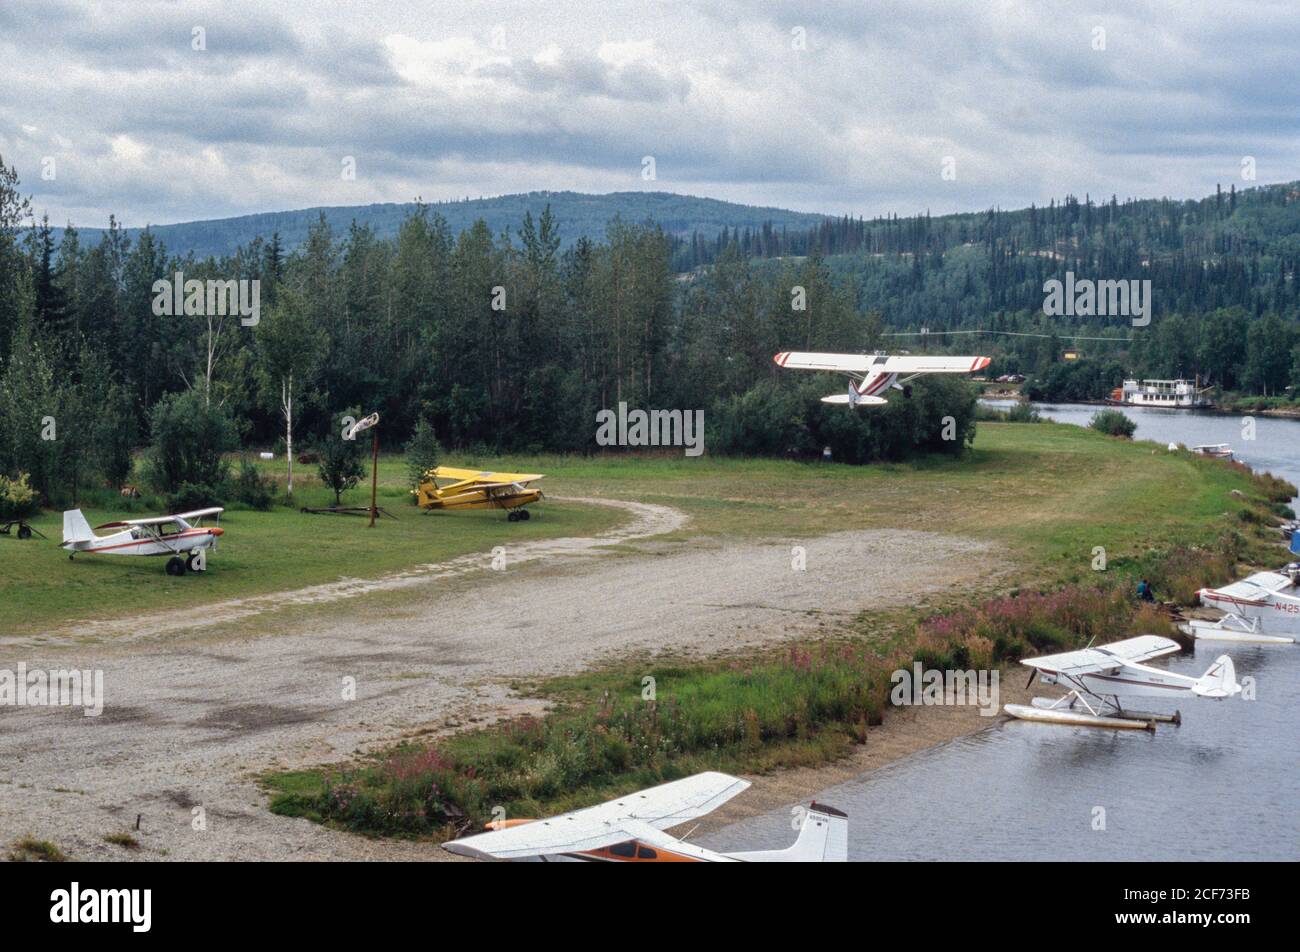 Fairbanks, Alaska, rivière Tanana. Avions dans votre cour avant : un décollage. Hydravions dans la rivière Tanana. Banque D'Images